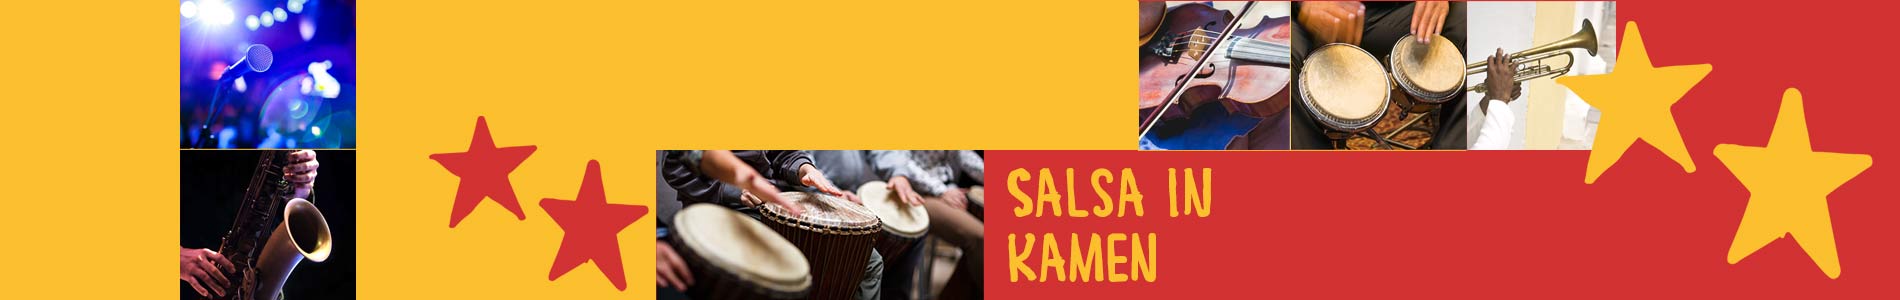 Salsa in Kamen – Salsa lernen und tanzen, Tanzkurse, Partys, Veranstaltungen